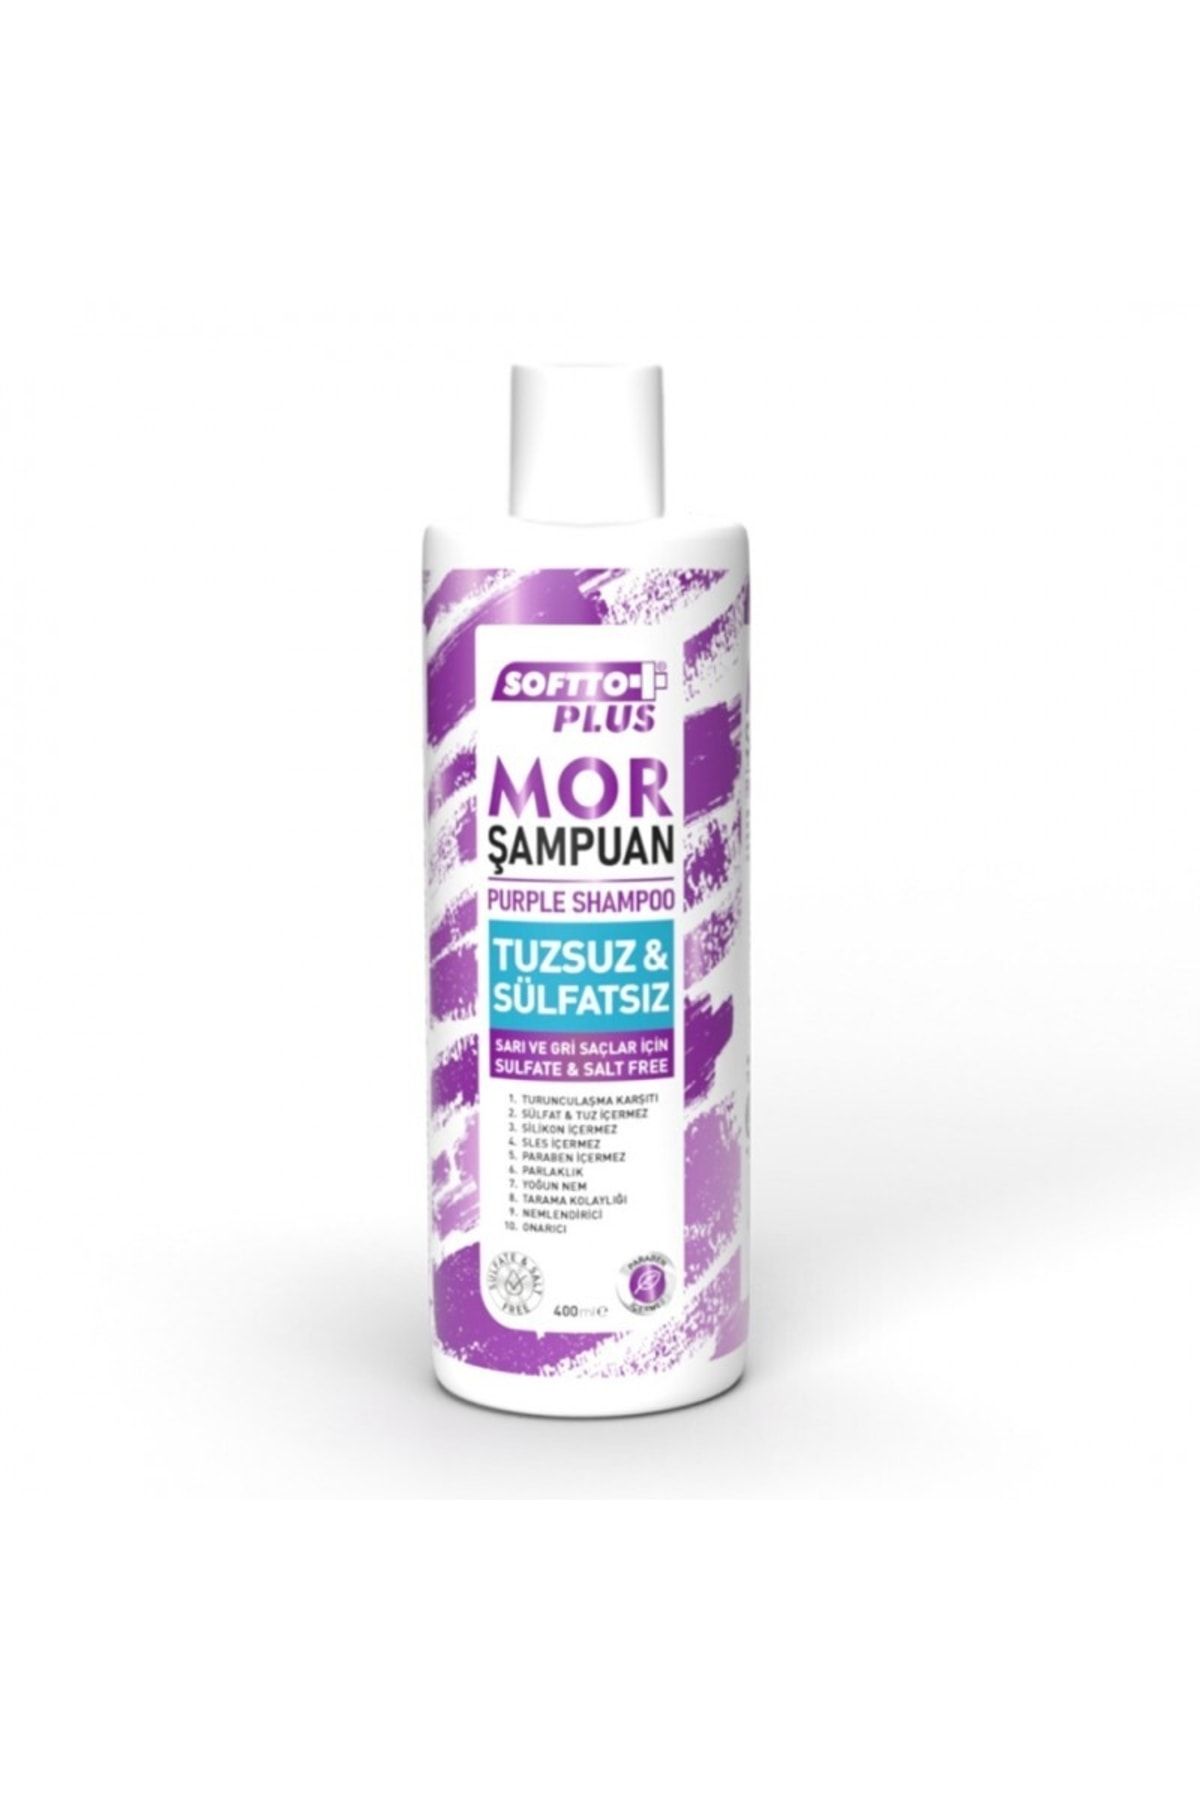 Softto Plus Renk Koruyucu Parlaklık Verici Turunculaşma Karşıtı Sülfatsız Mor Şampuan 400 ml